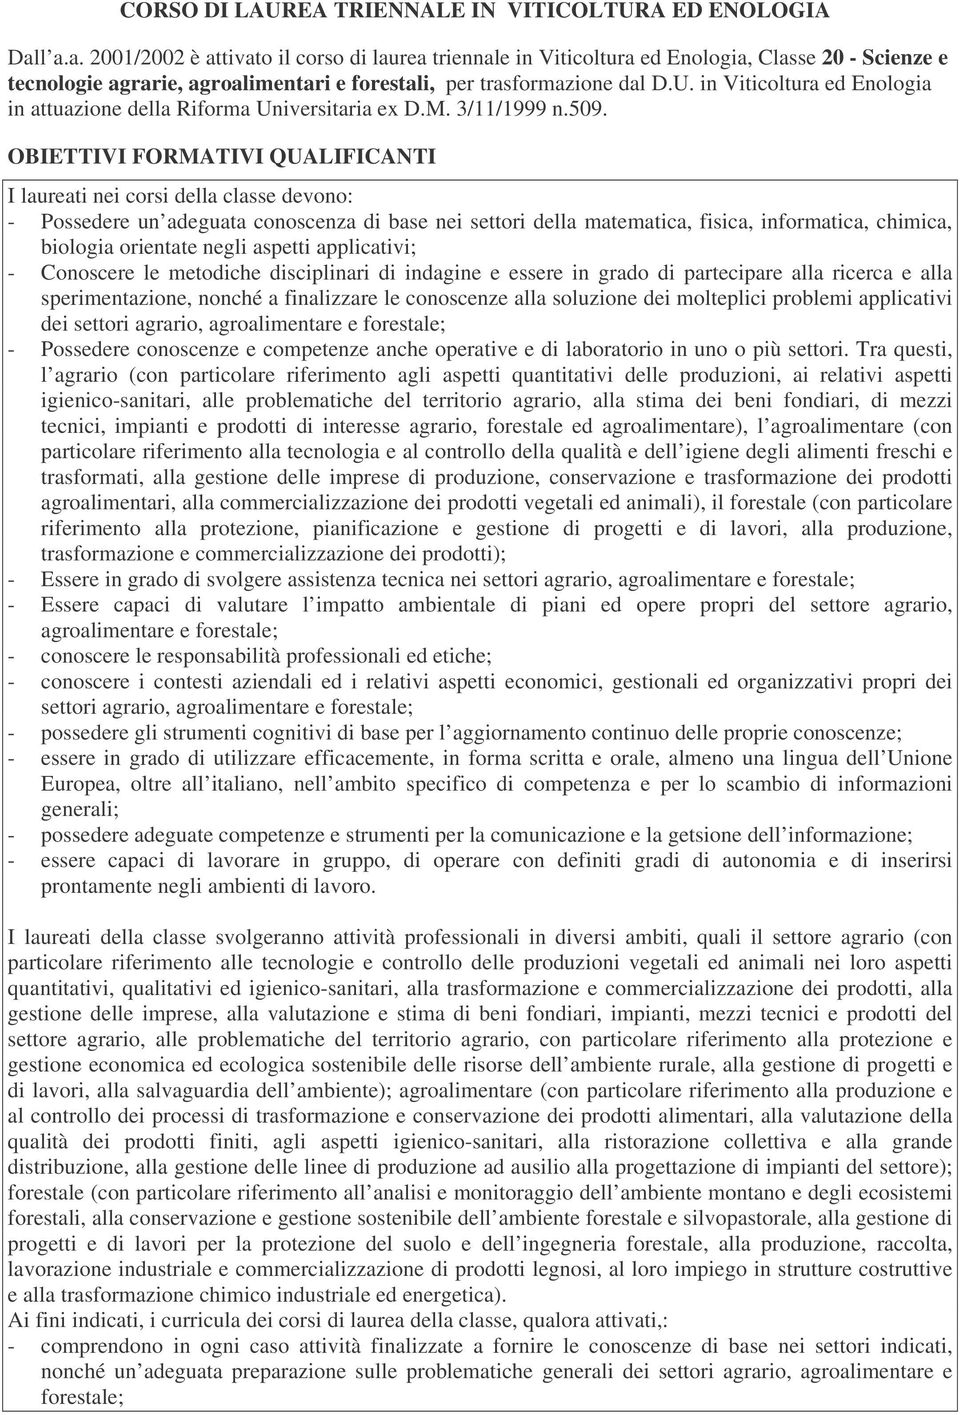 in Viticoltura ed Enologia in attuazione della Riforma Universitaria ex D.M. /11/1999 n.509.